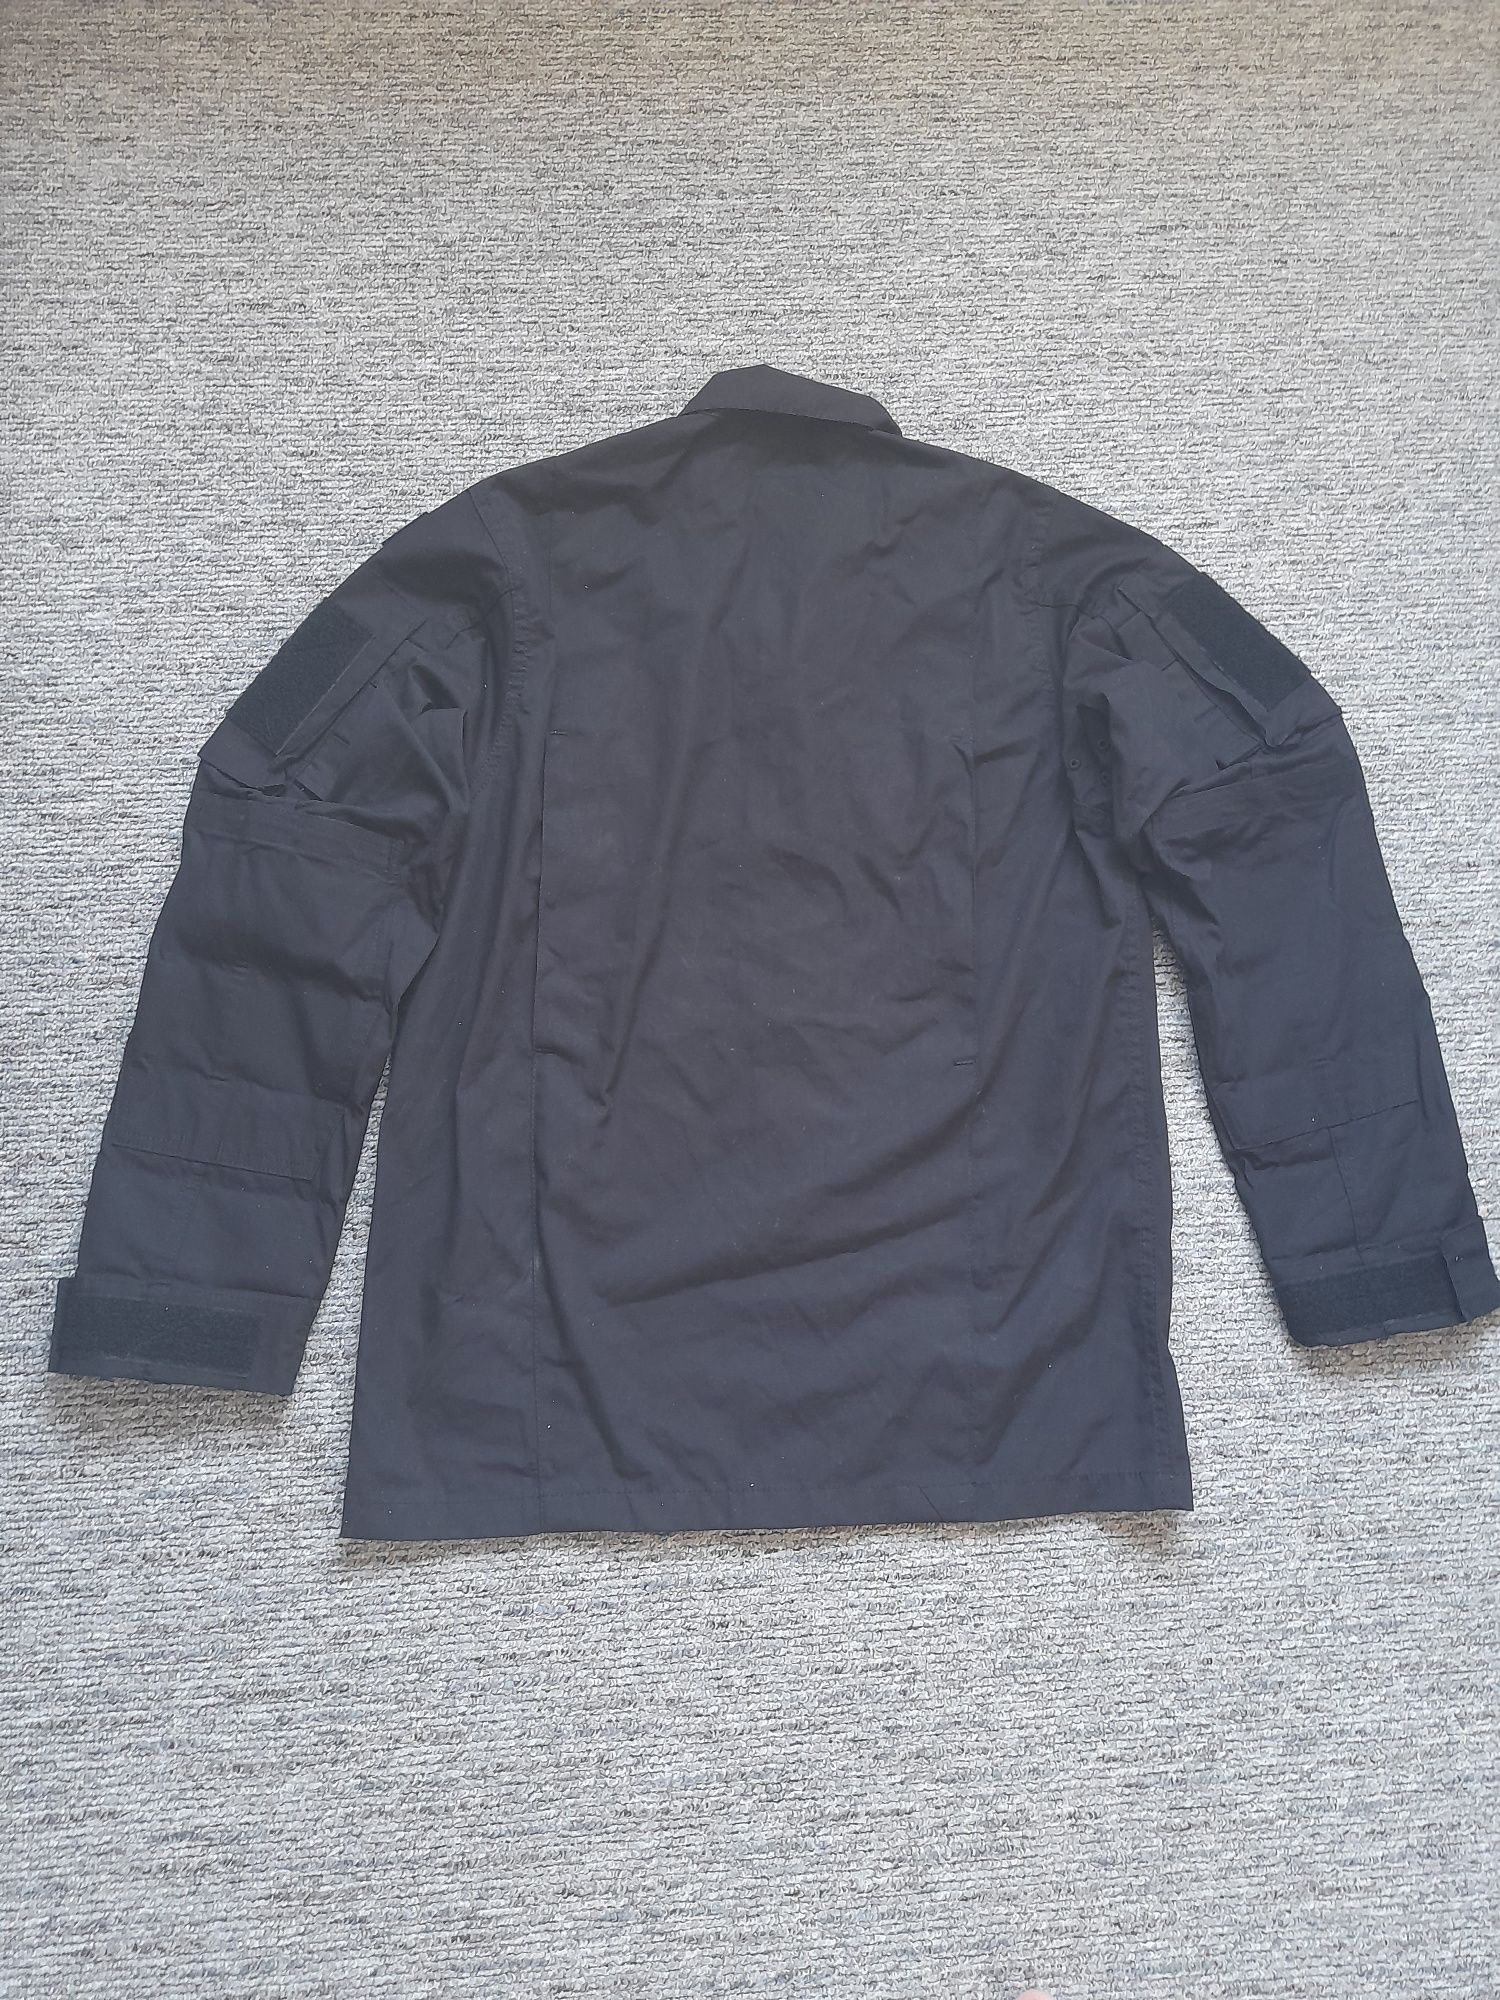 Bluza mundurowa WZ10 Ripstop firmy texar - czarna